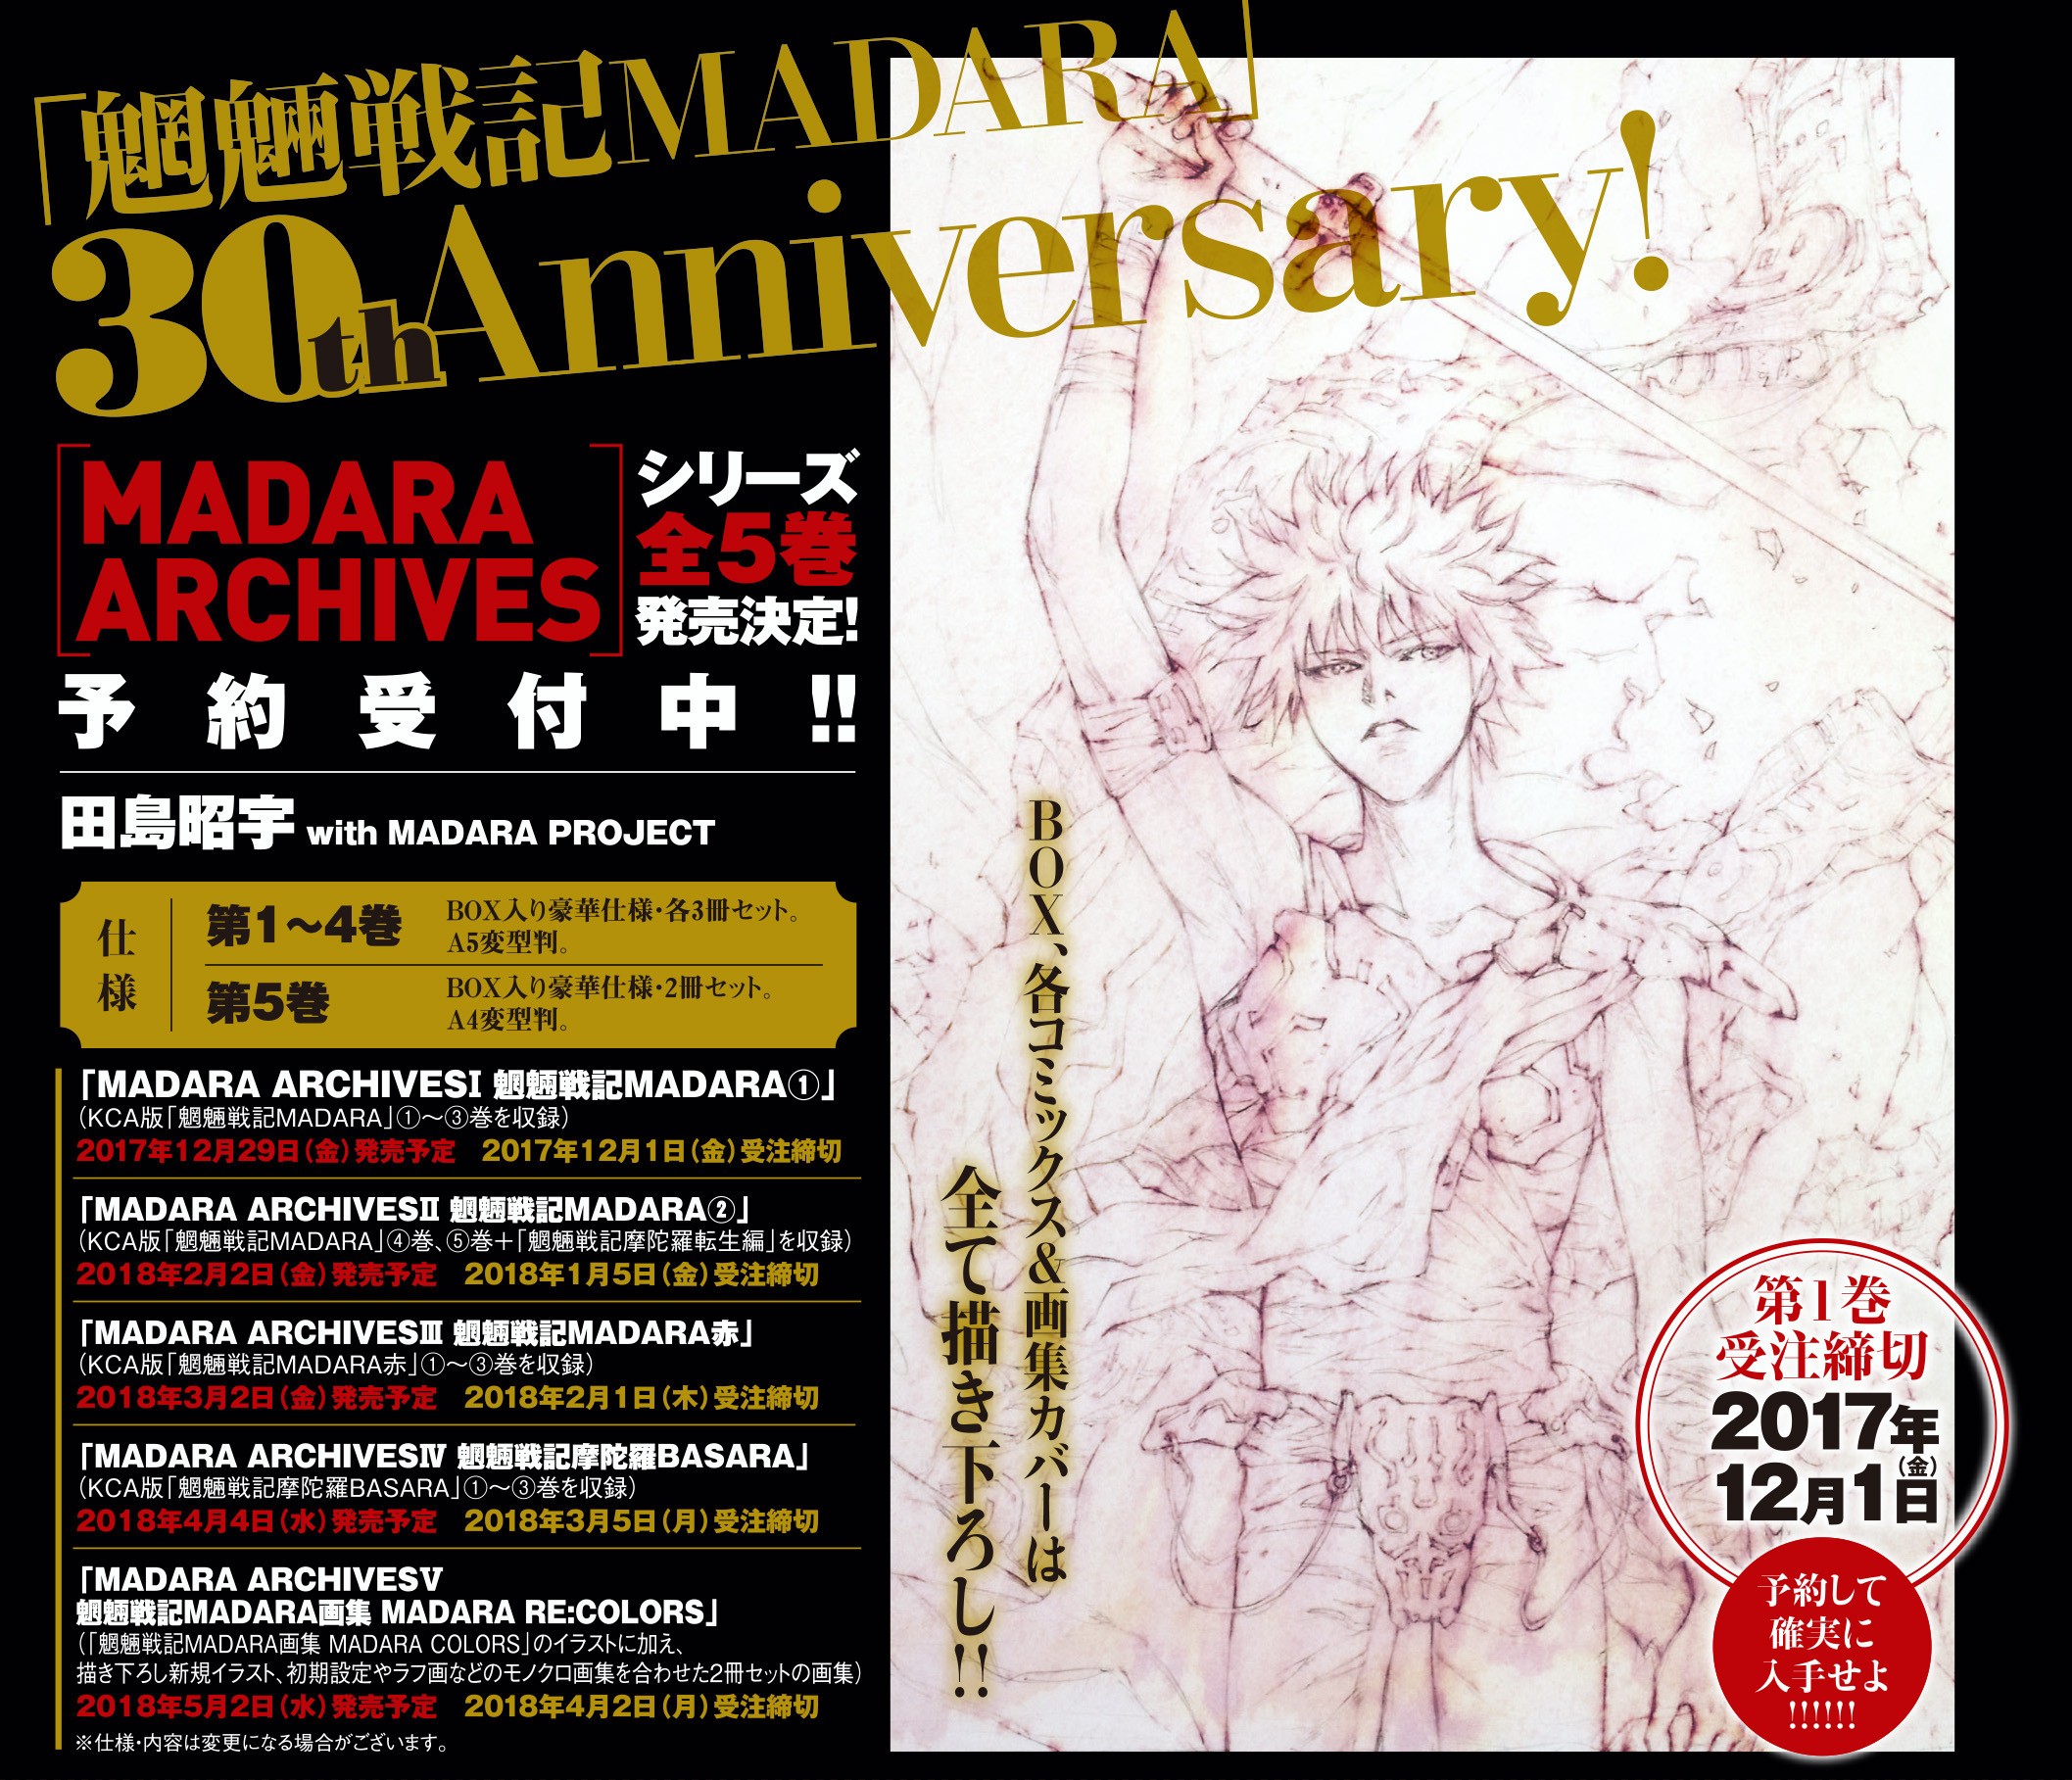 魍魎戦記madara 30周年記念 限定愛蔵版が5カ月連続刊行決定 株式会社kadokawaのプレスリリース